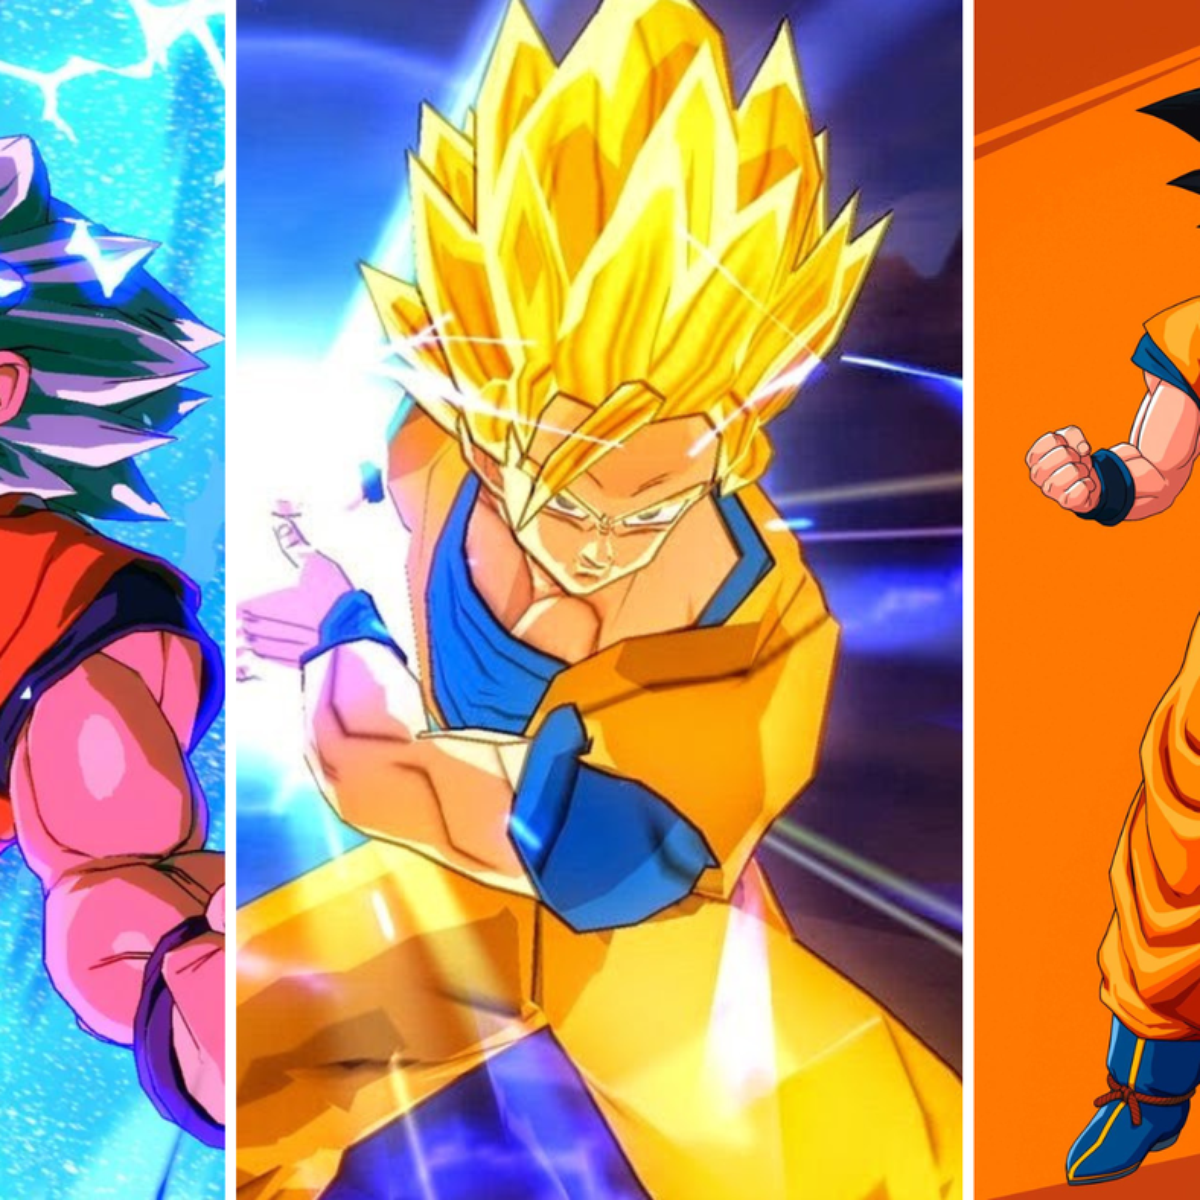 Goku super saiyajin infinito  Dragon ball, Dragon ball art, Dragon ball  image